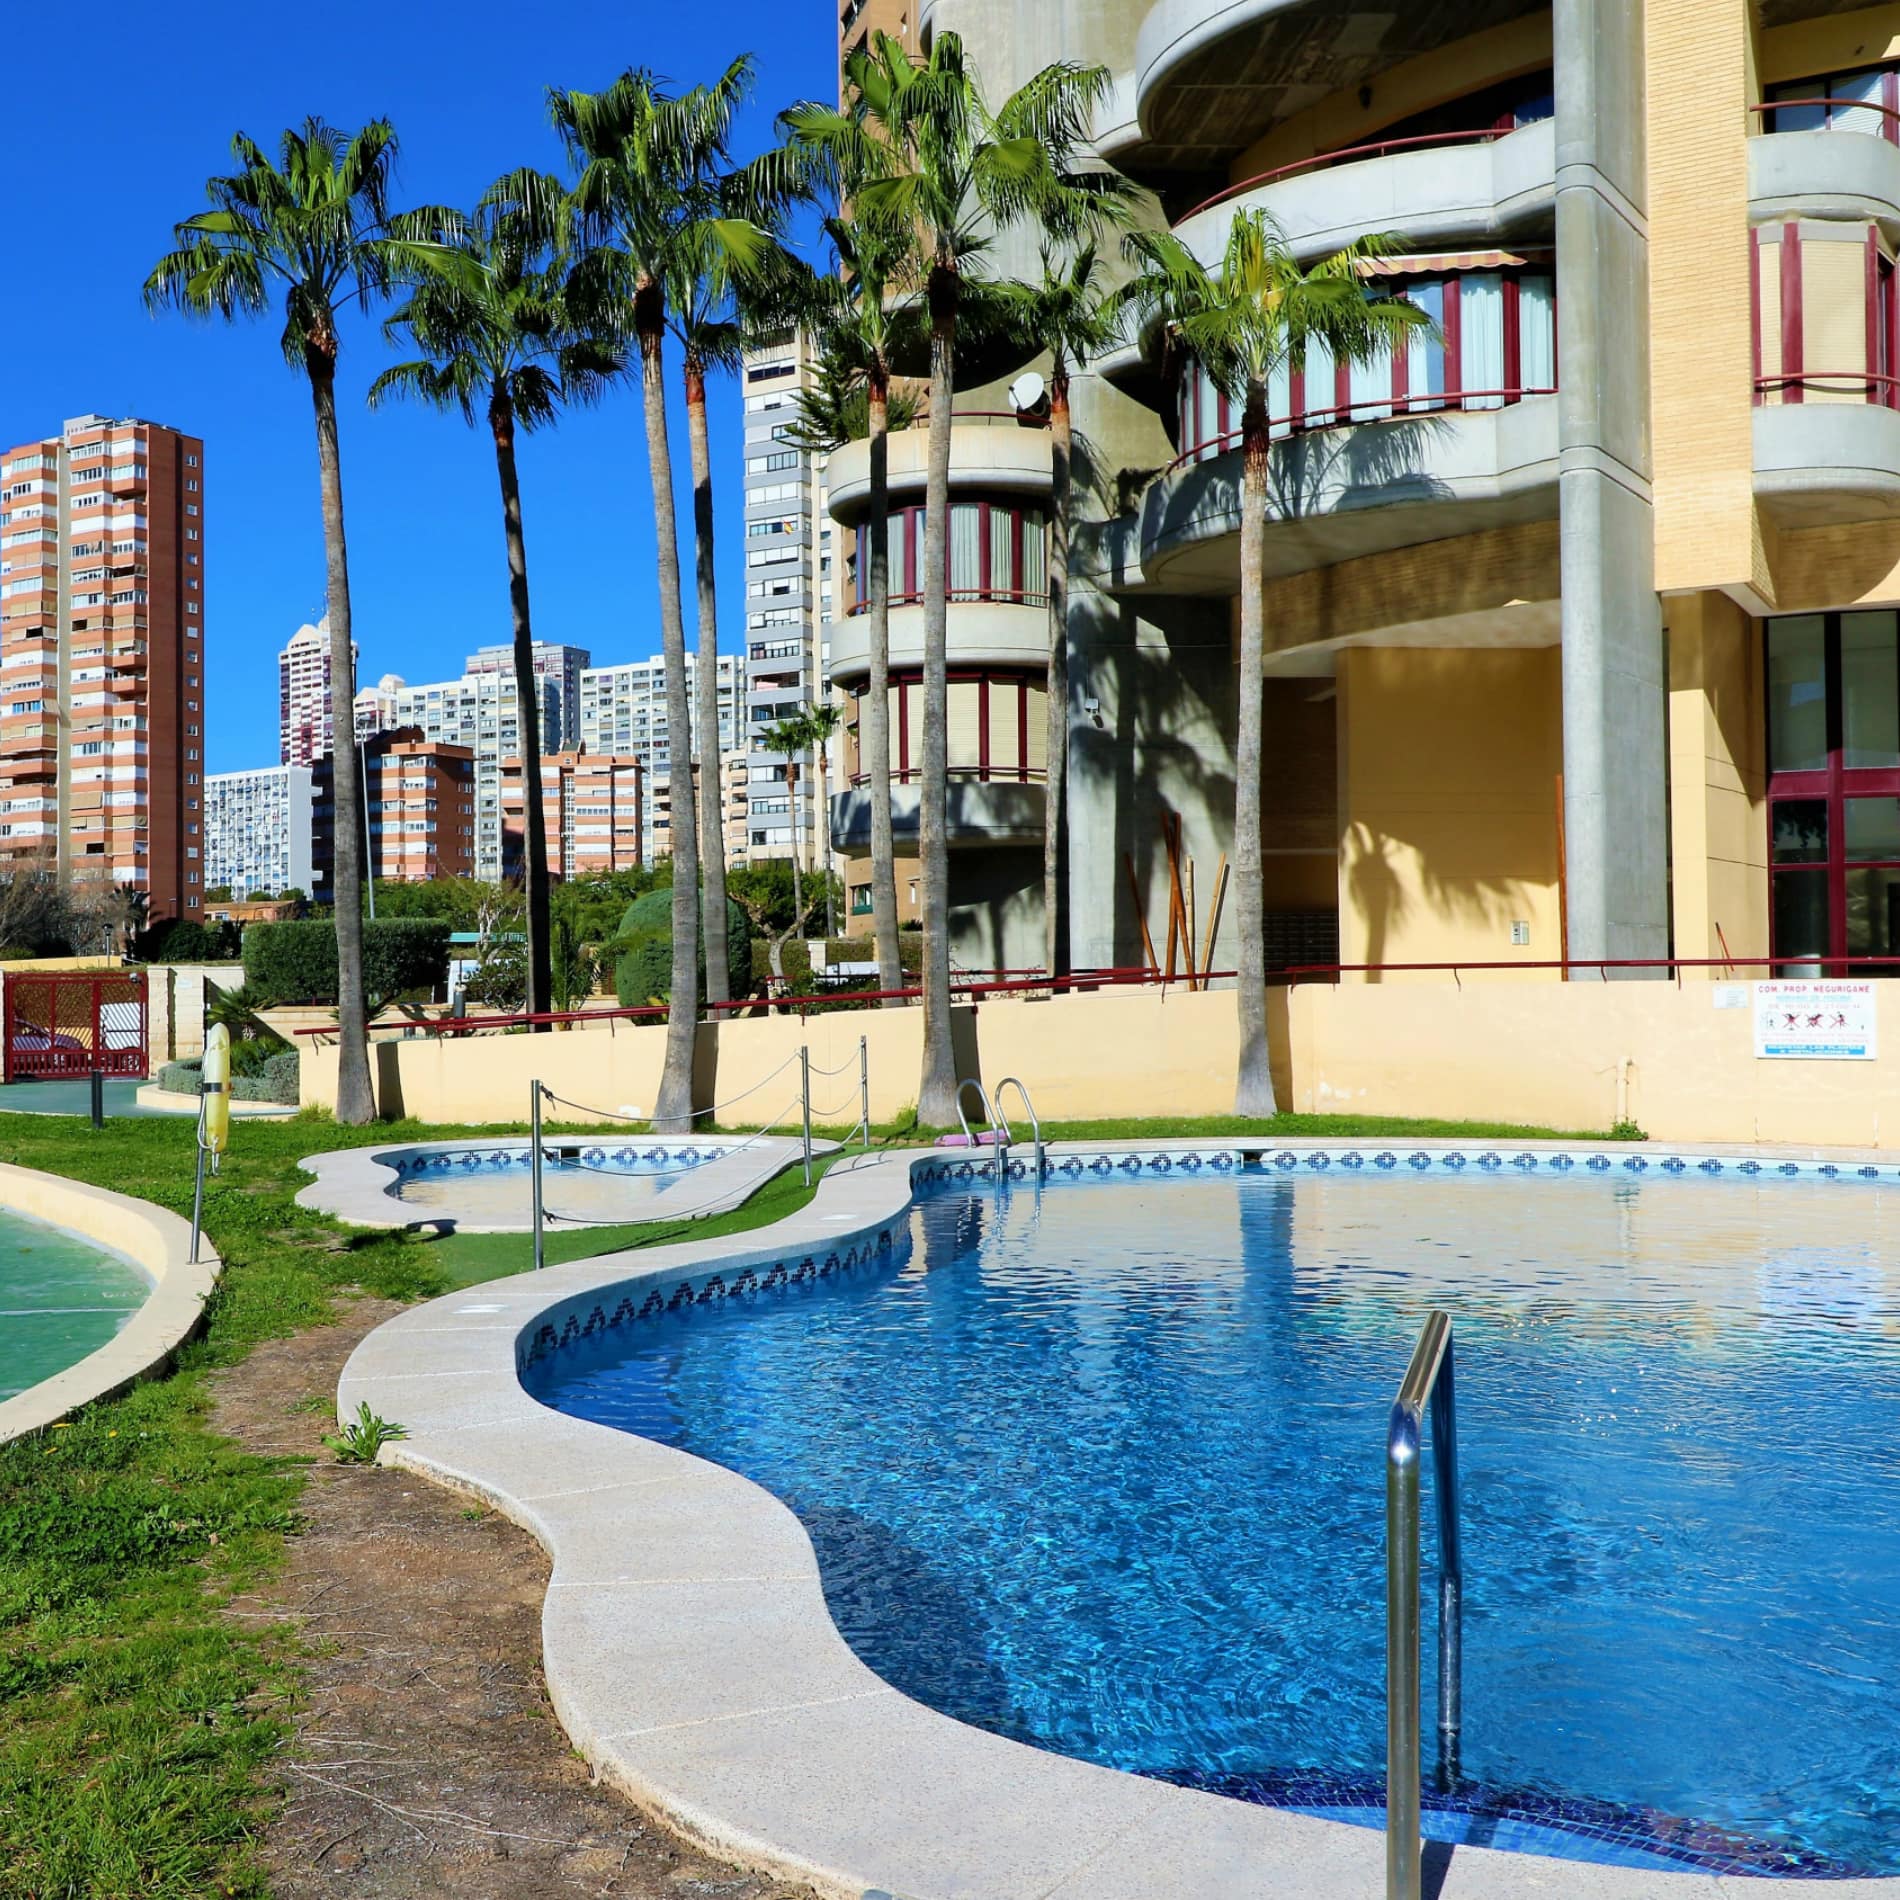 Zwembad met blauw water, palmbomen in de tuin van een appartementencomplex